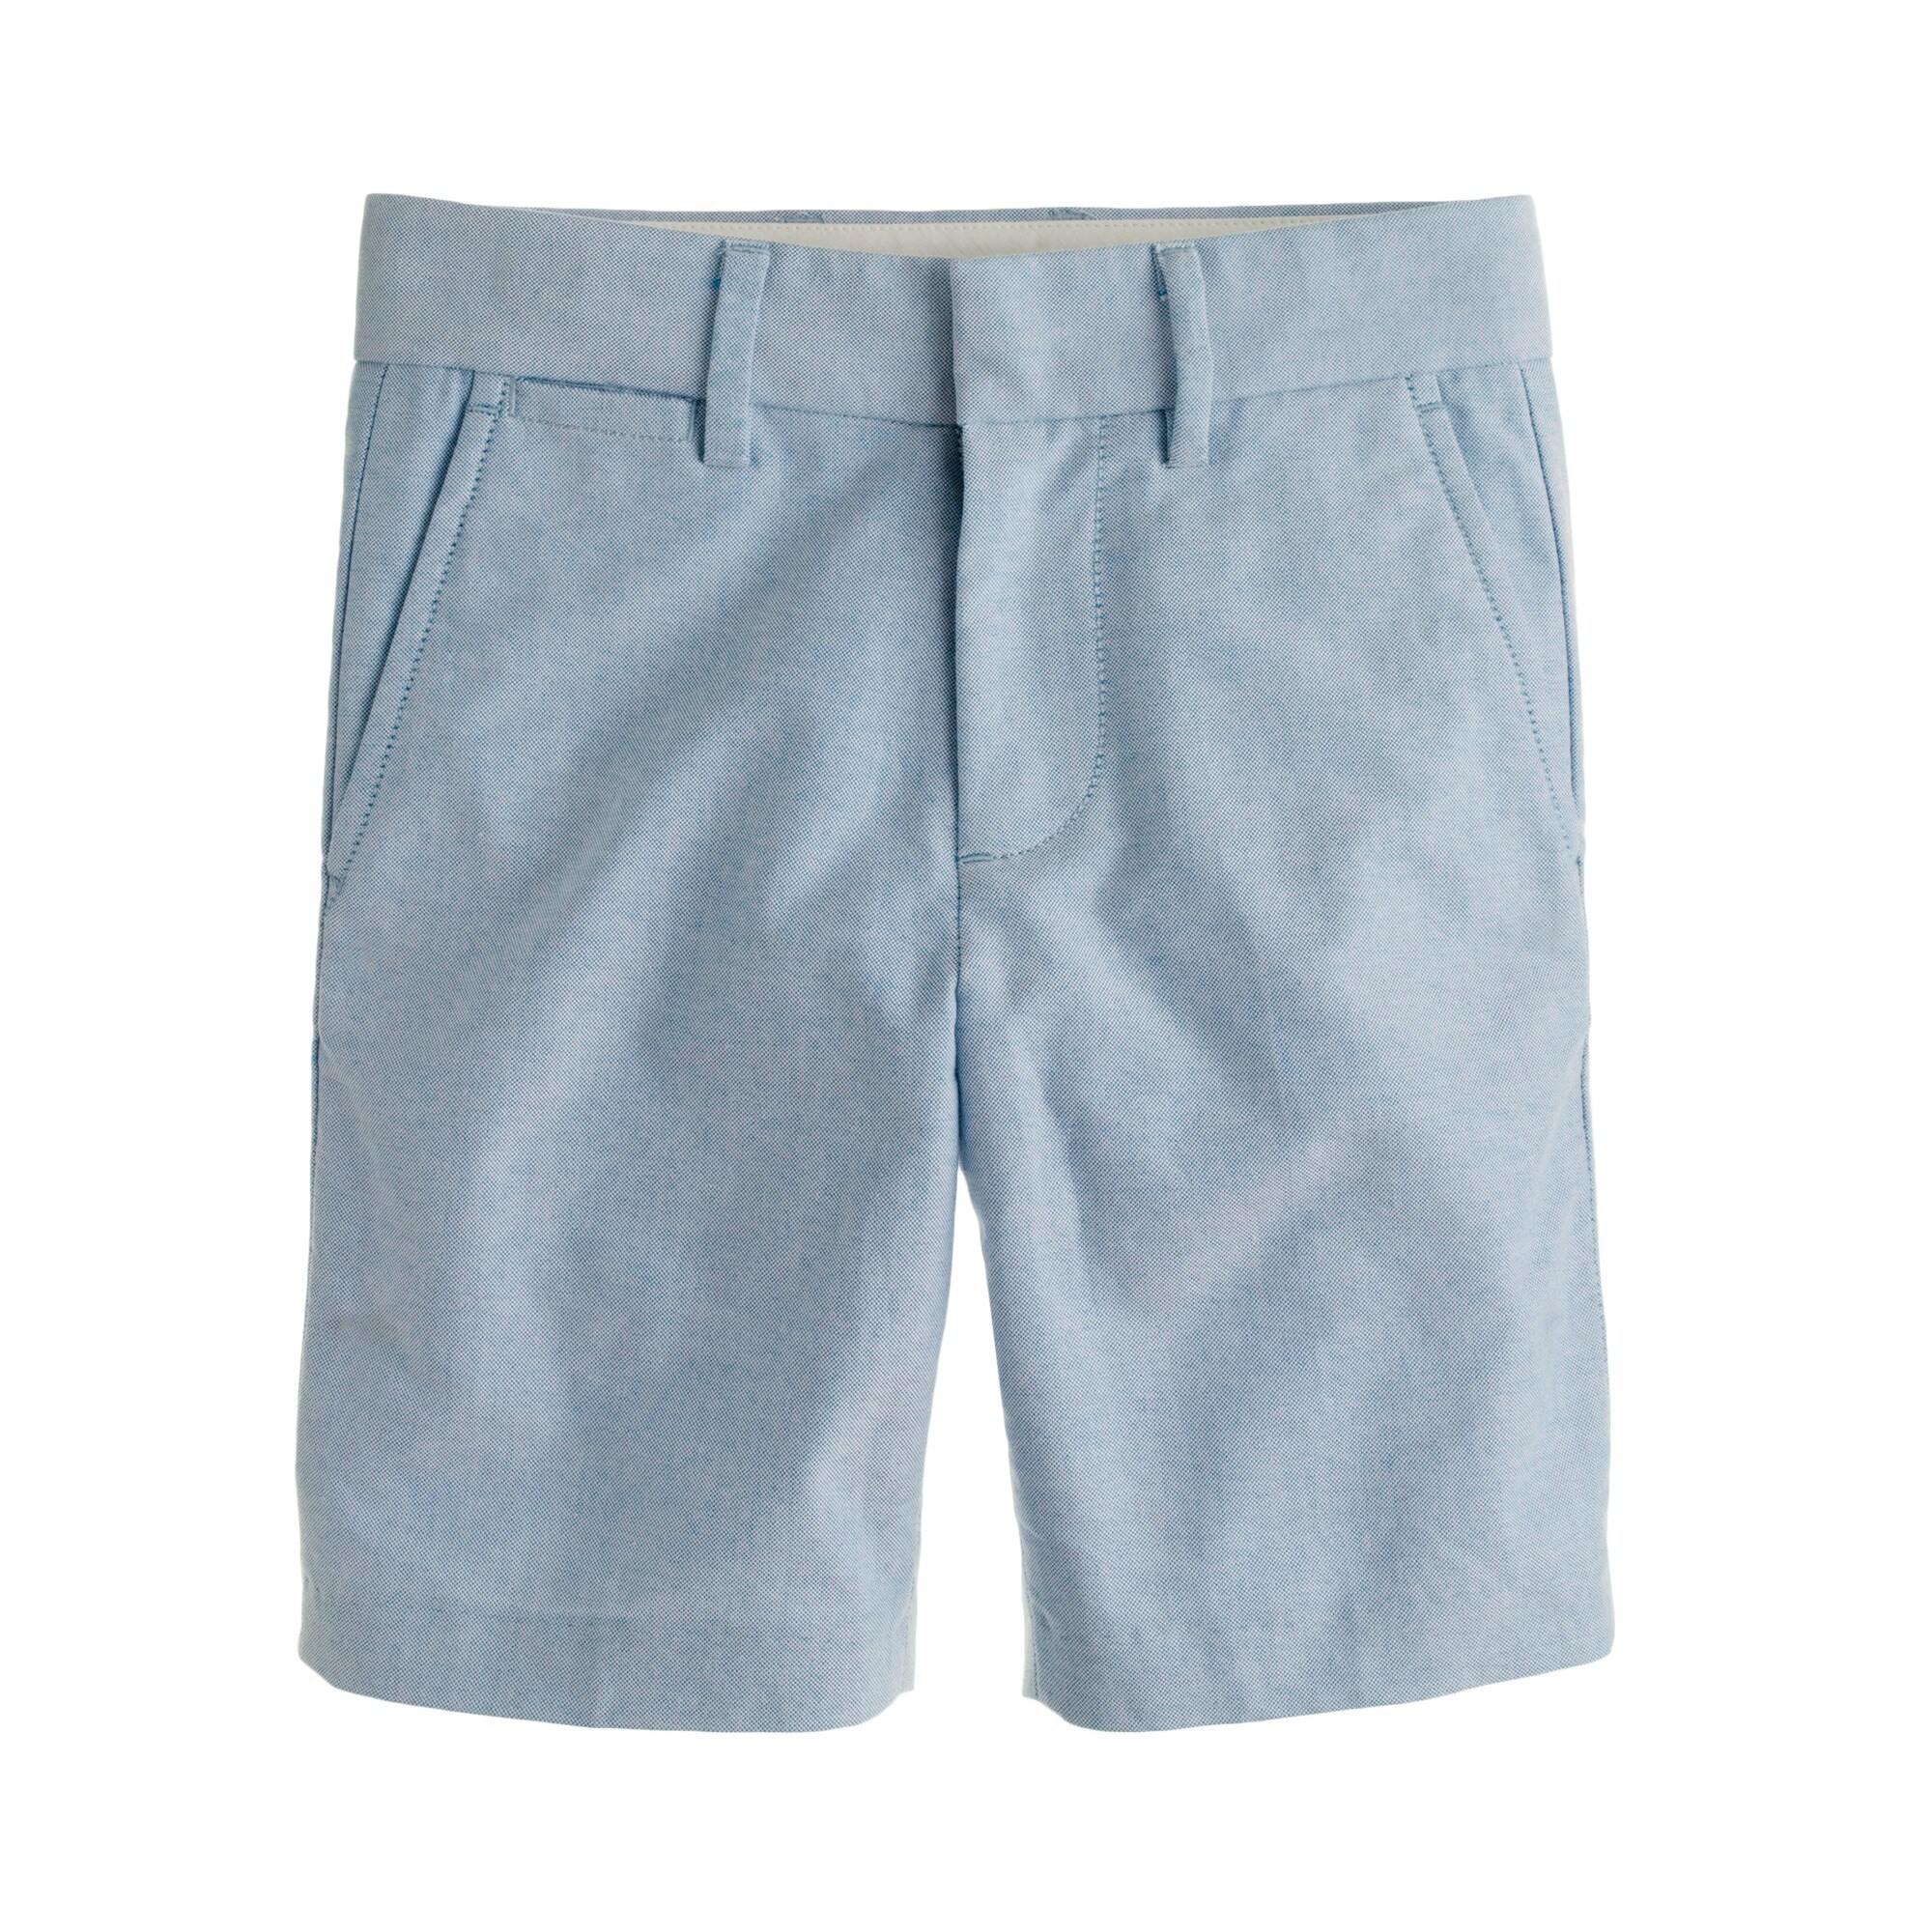 Boys' club short in oxford cloth : Boy club shorts | J.Crew